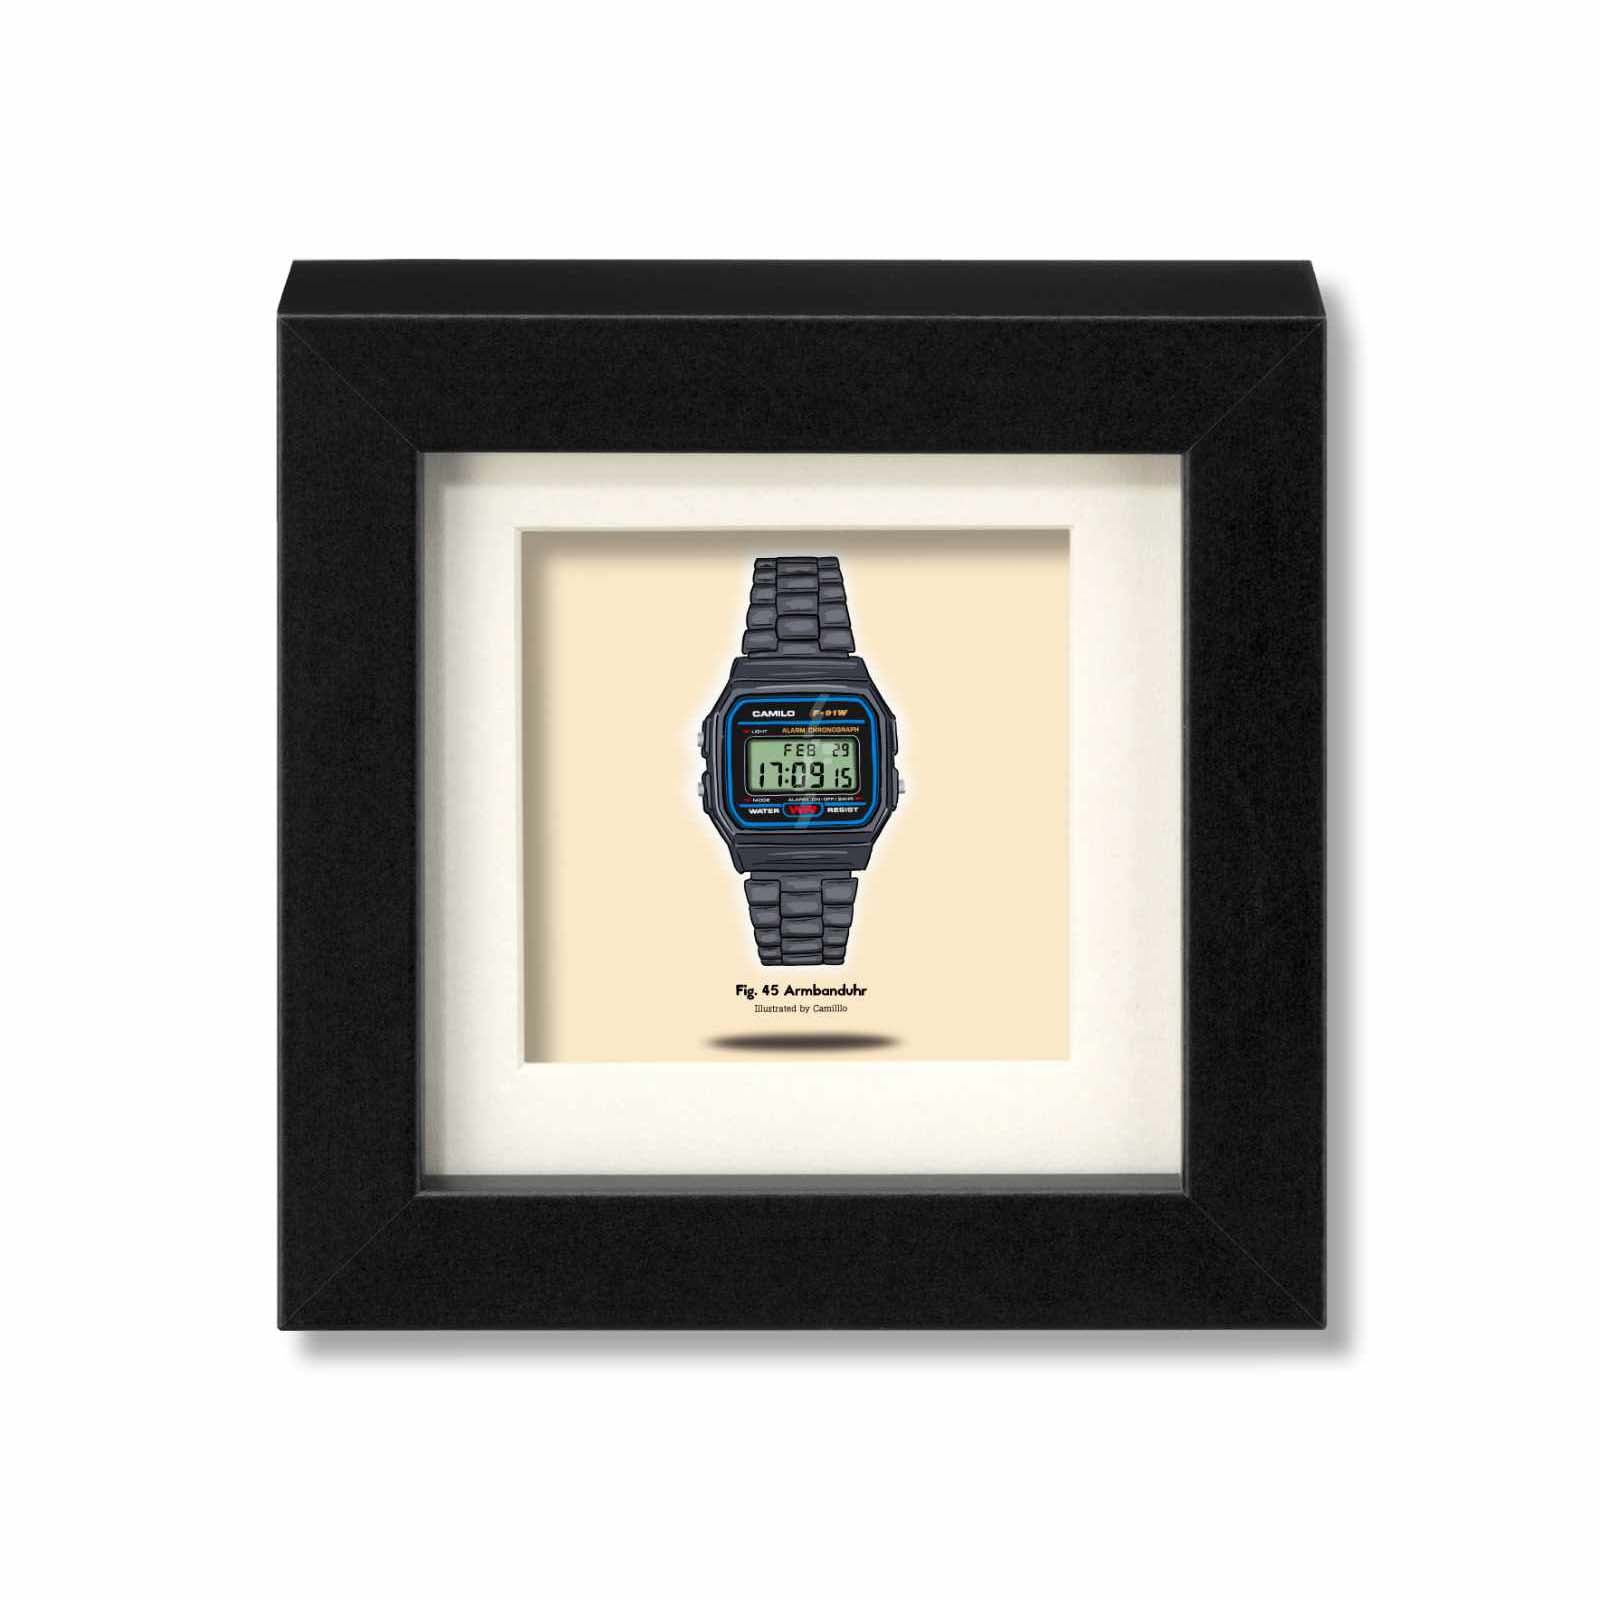 Giclée-Druck einer Armbanduhr - Klassisches Design - schwarzer Rahmen - kleine Größe